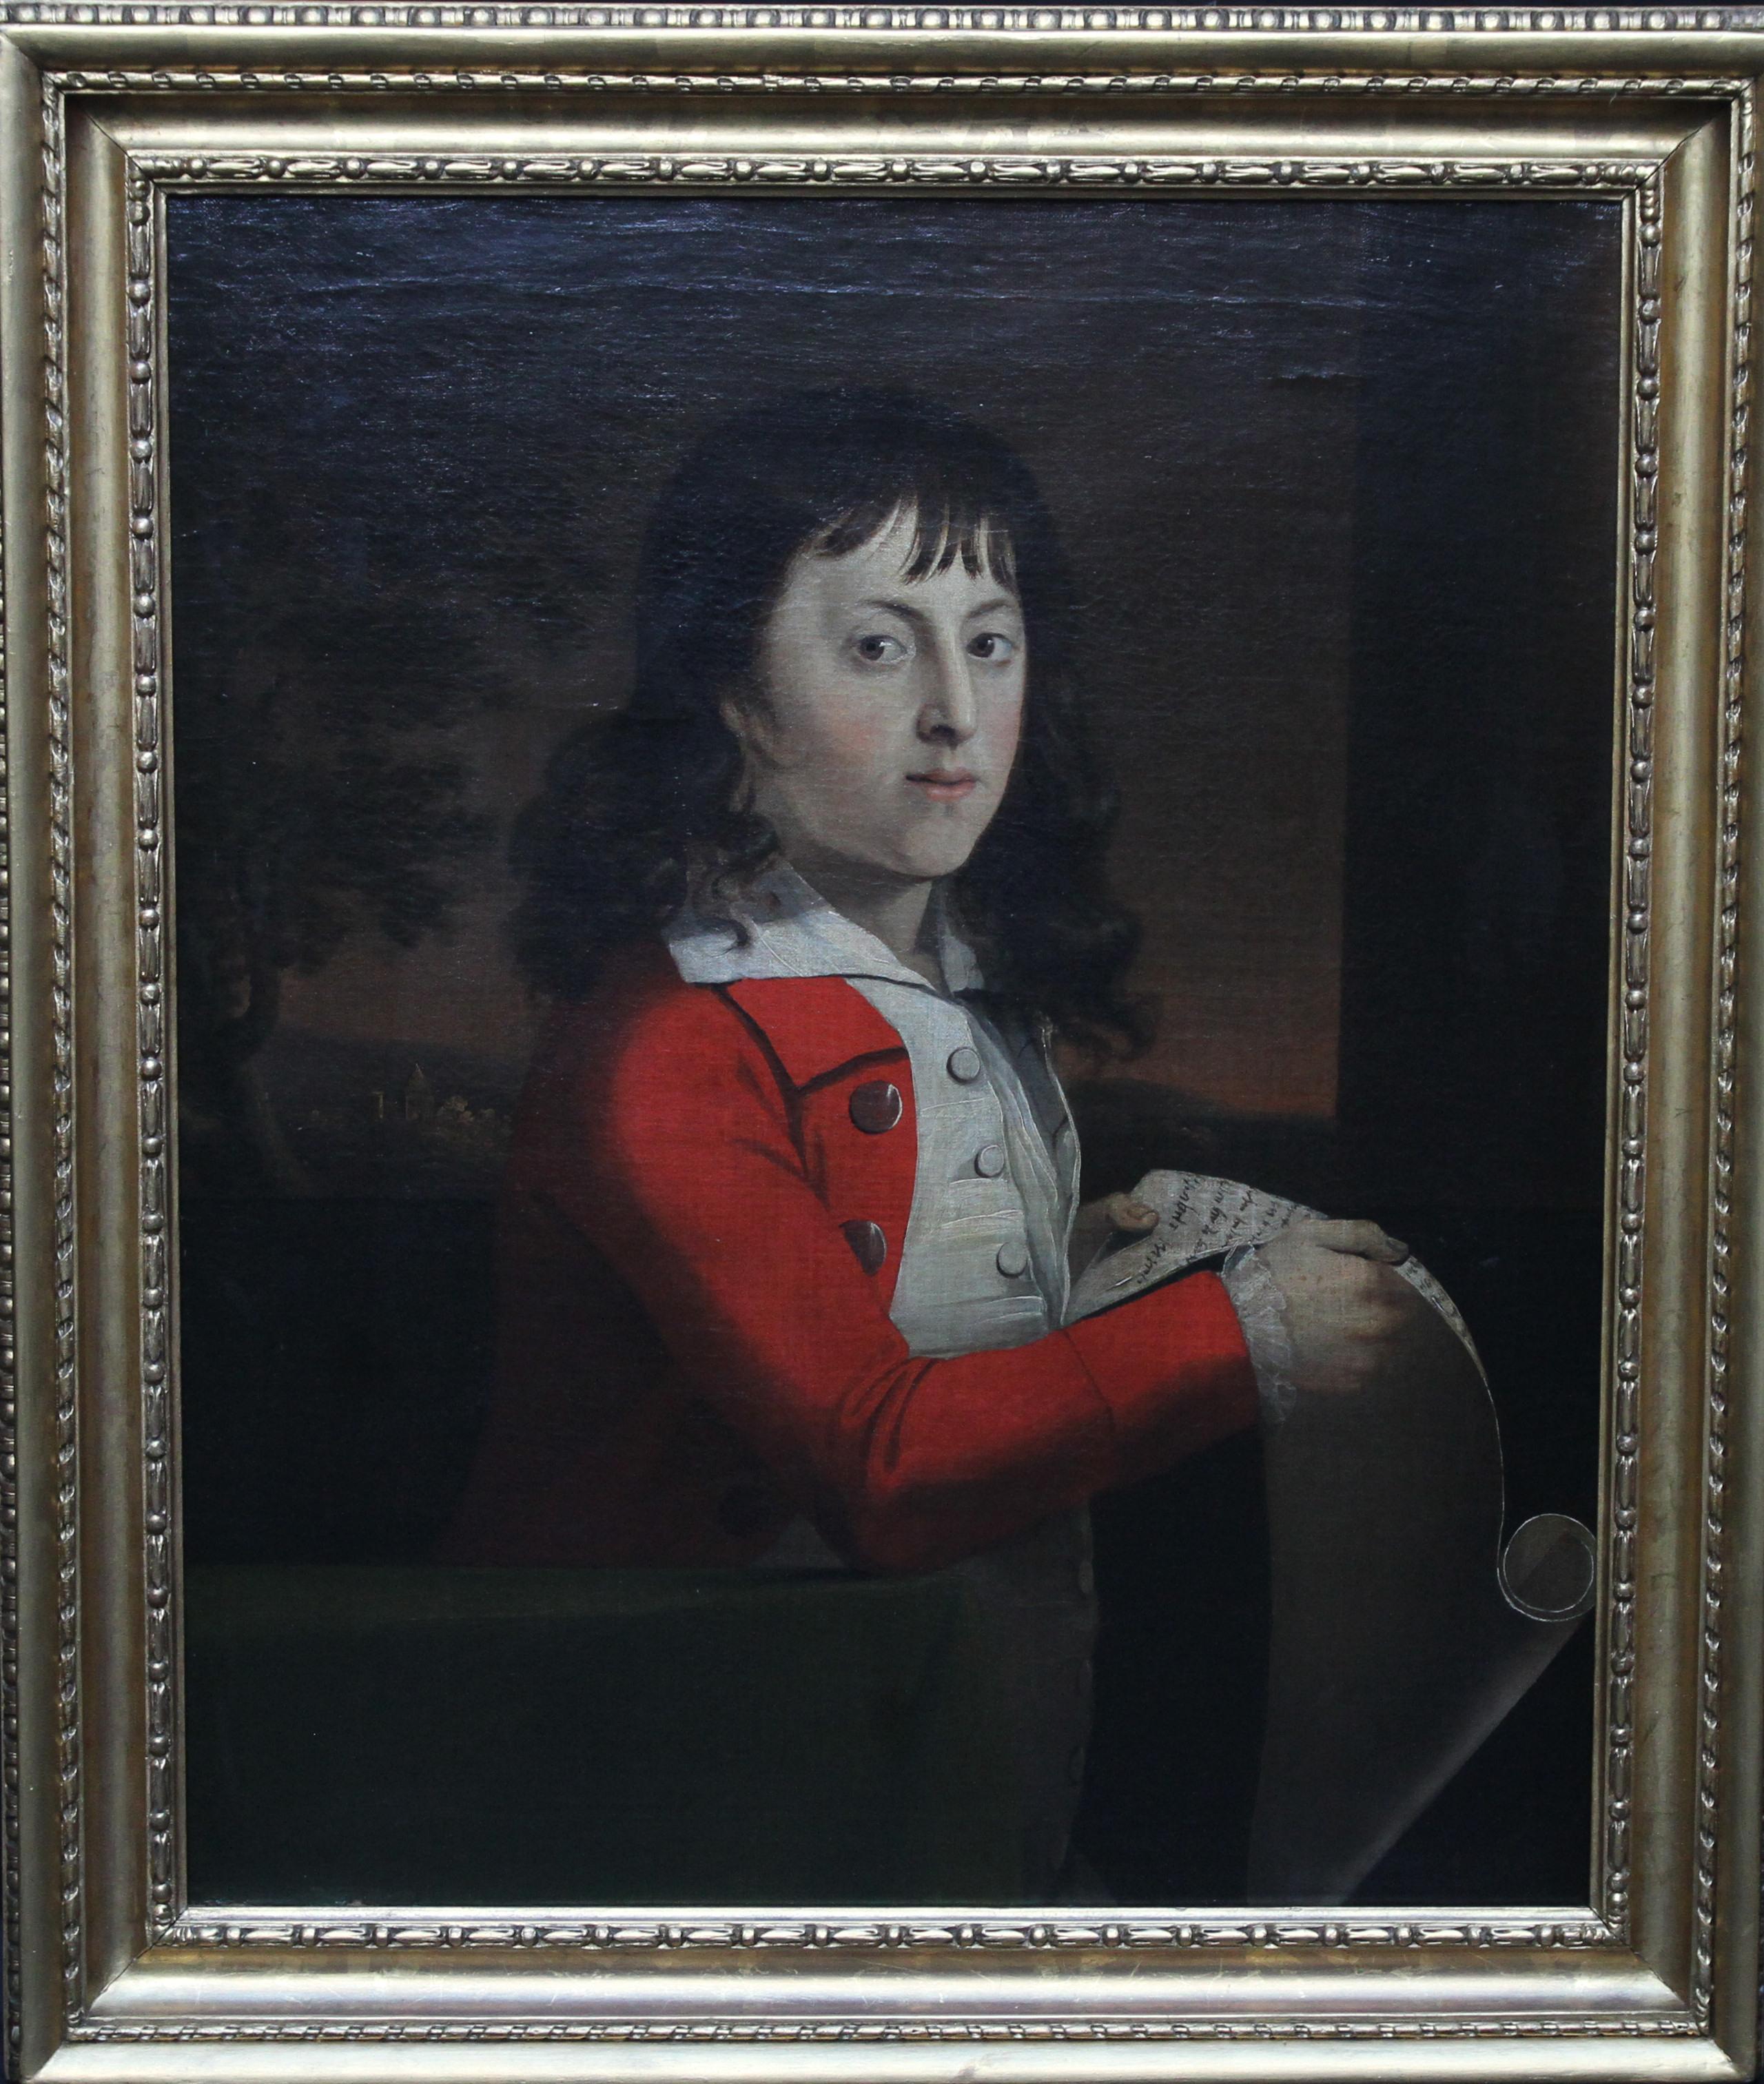 Attributed to Alexander Nasmyth Portrait Painting – Porträt eines jungen Jungen von Thomas Wagstaff – schottisches Ölgemälde aus dem 18. Jahrhundert